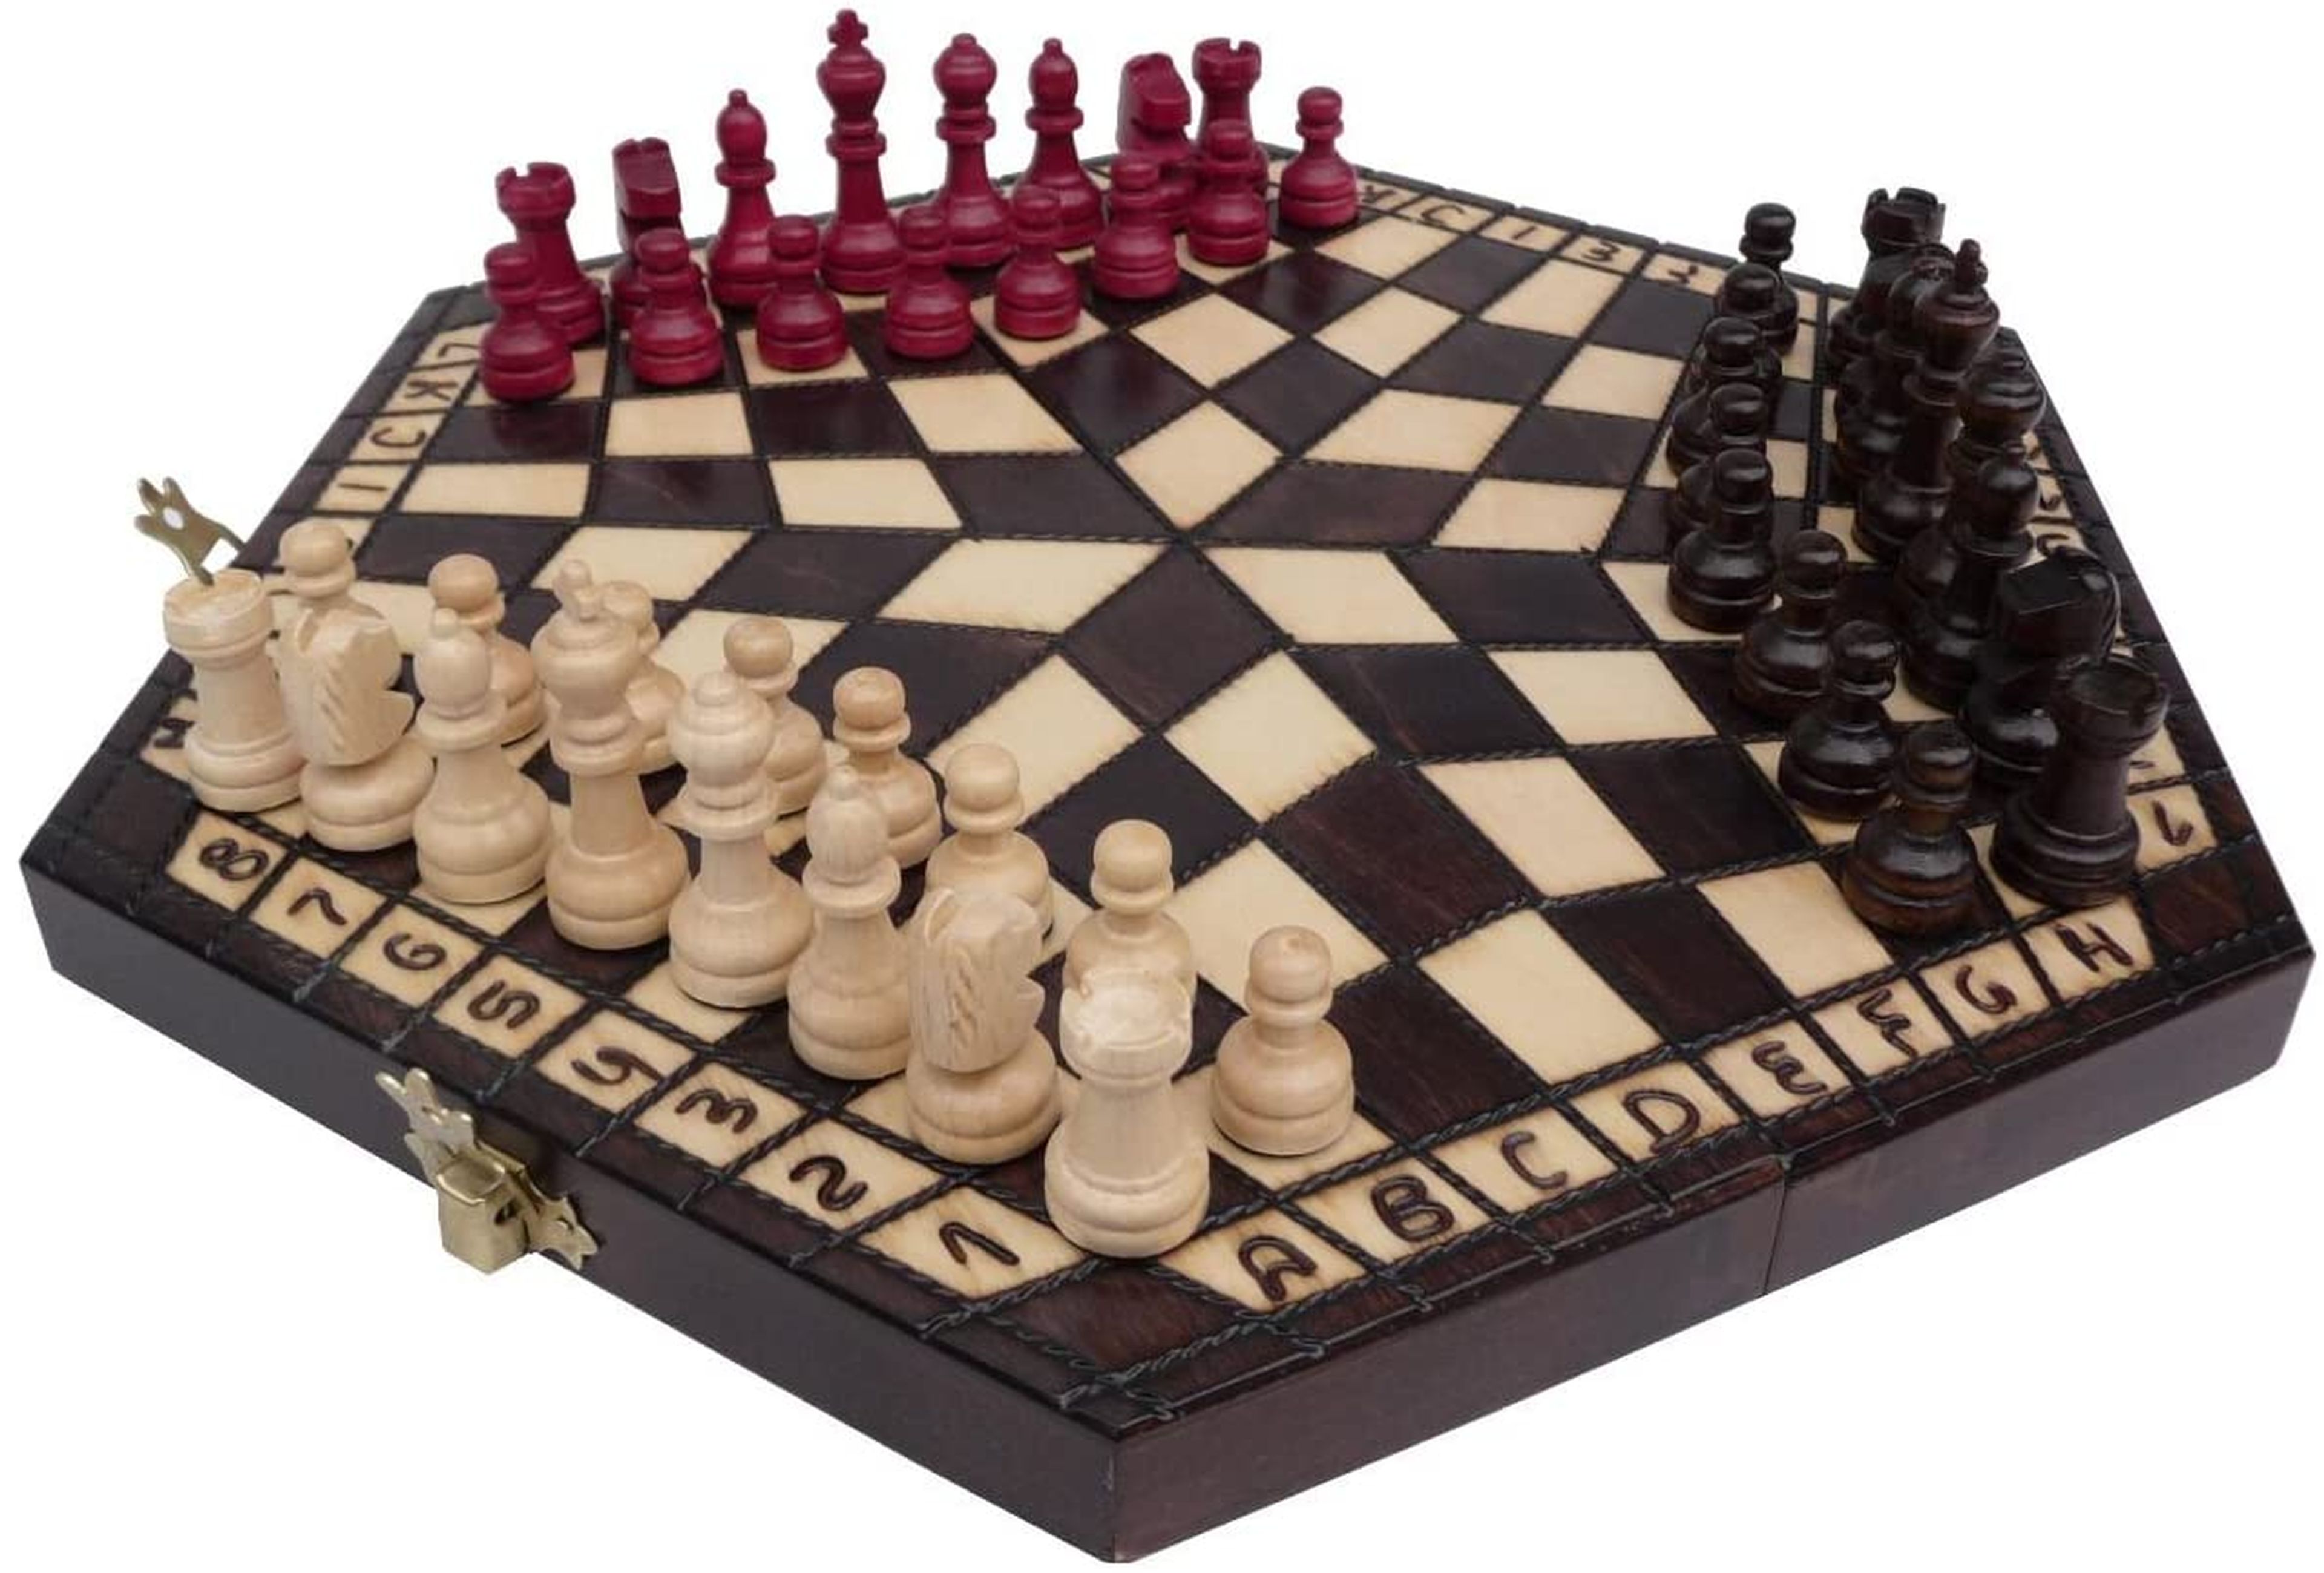 Si ya has jugado a todos los juegos de mesa, prueba el ajedrez con tres jugadores